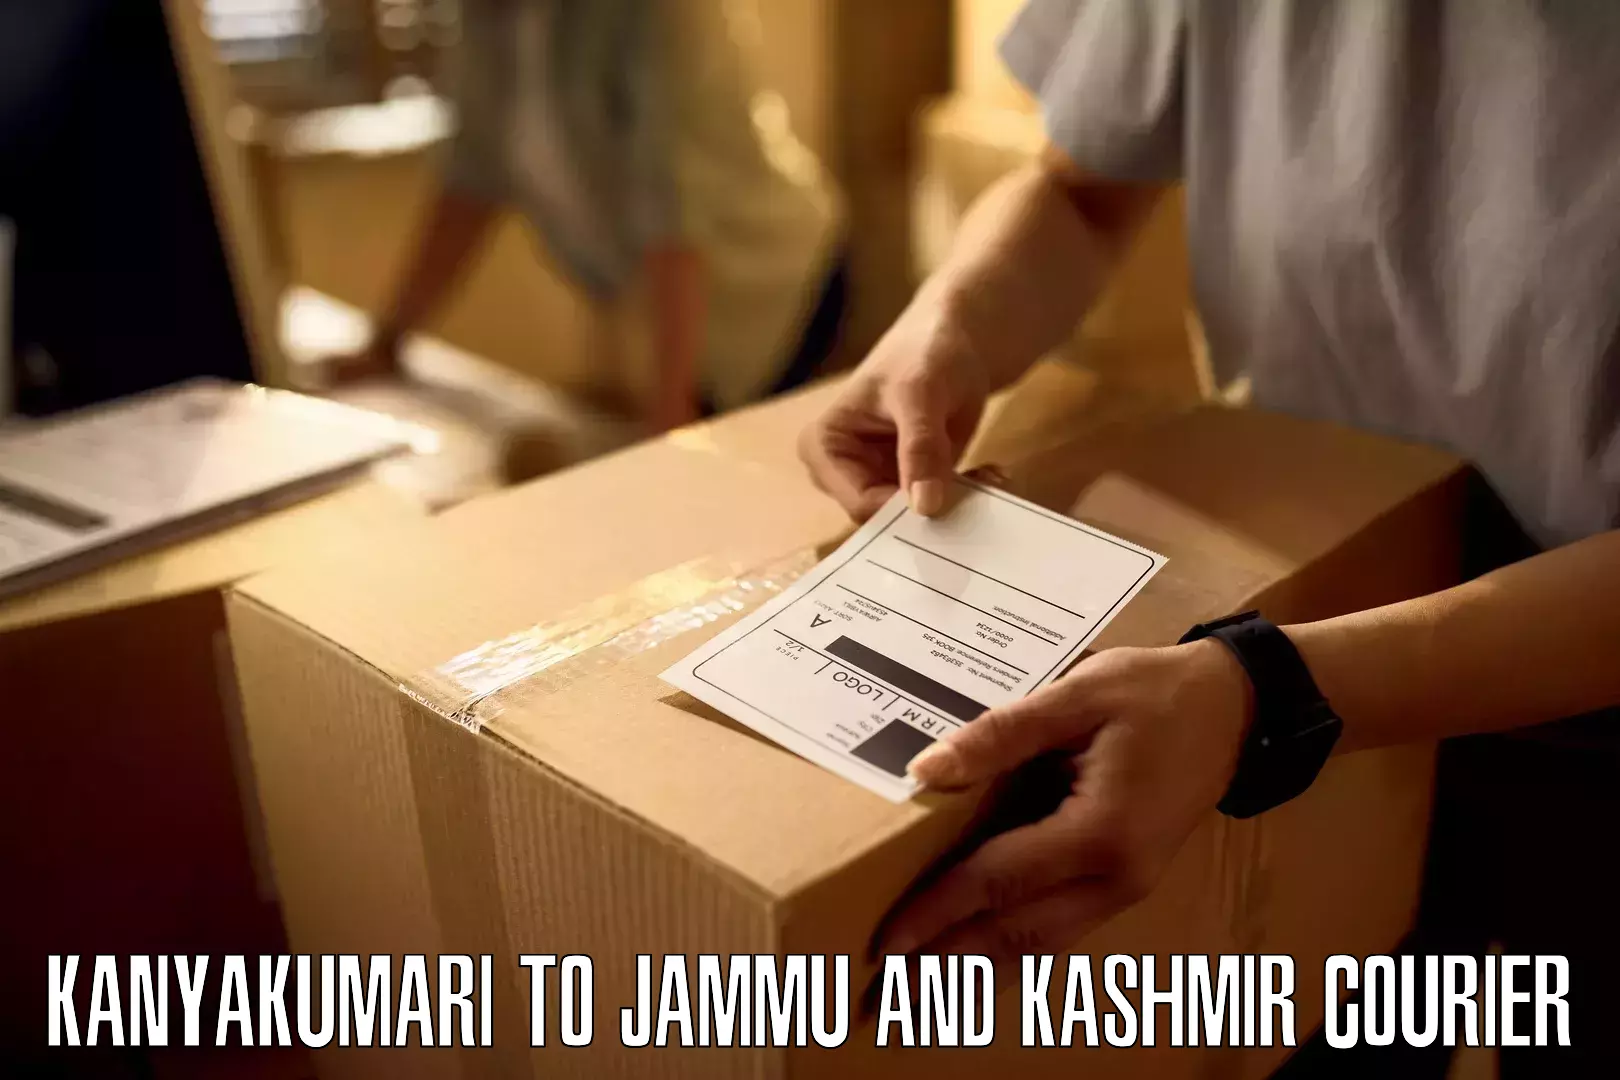 Air courier services Kanyakumari to IIT Jammu